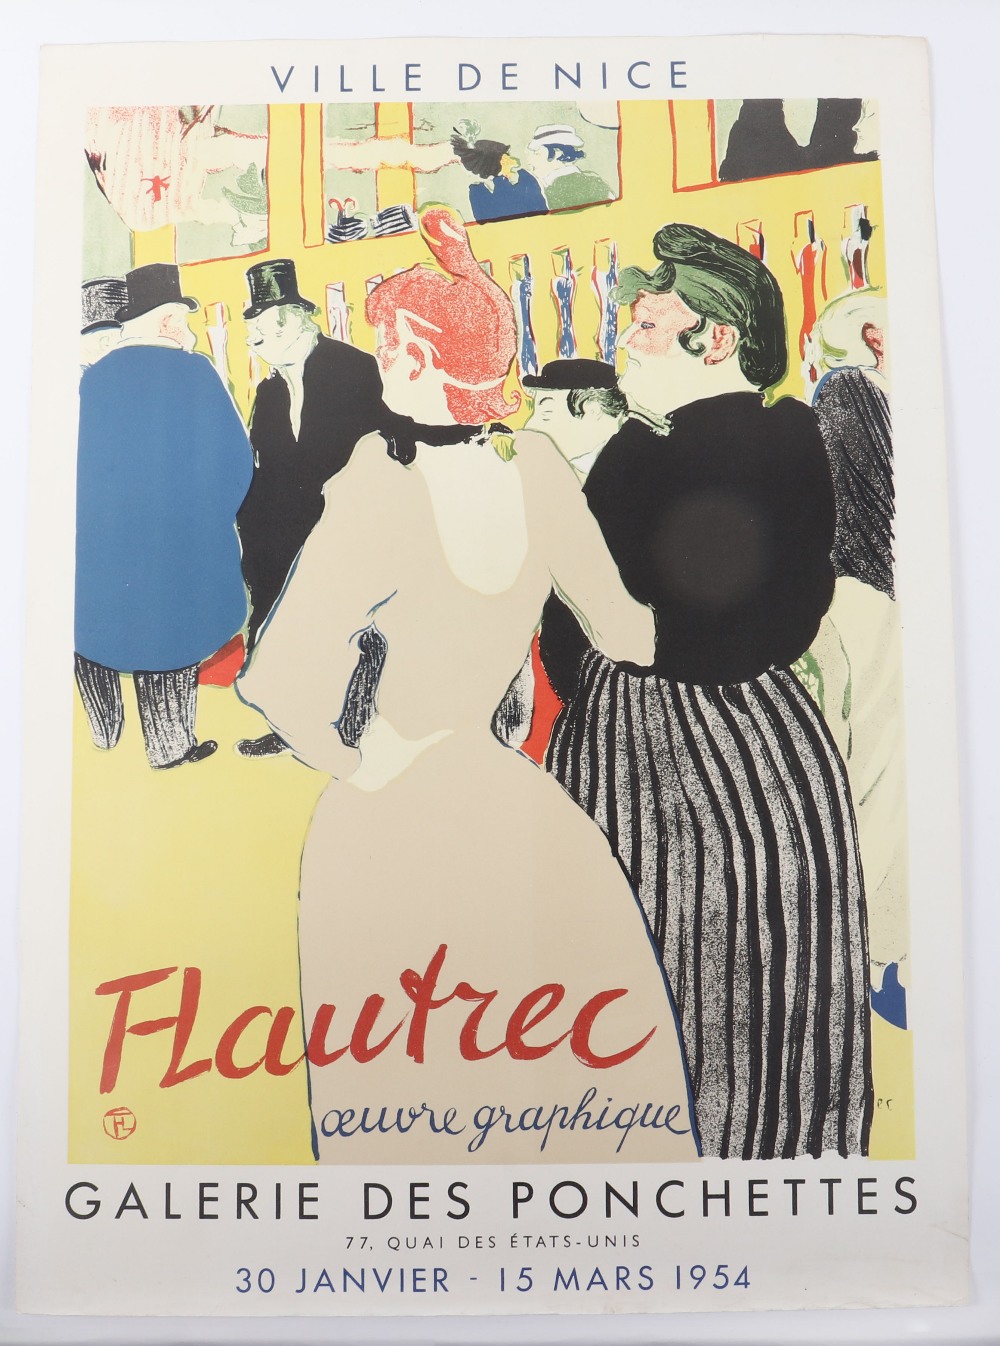 Henri de Toulouse-Lautrec “Ville de Nice” exhibition poster, 51cmWx71cmH - Bild 5 aus 5